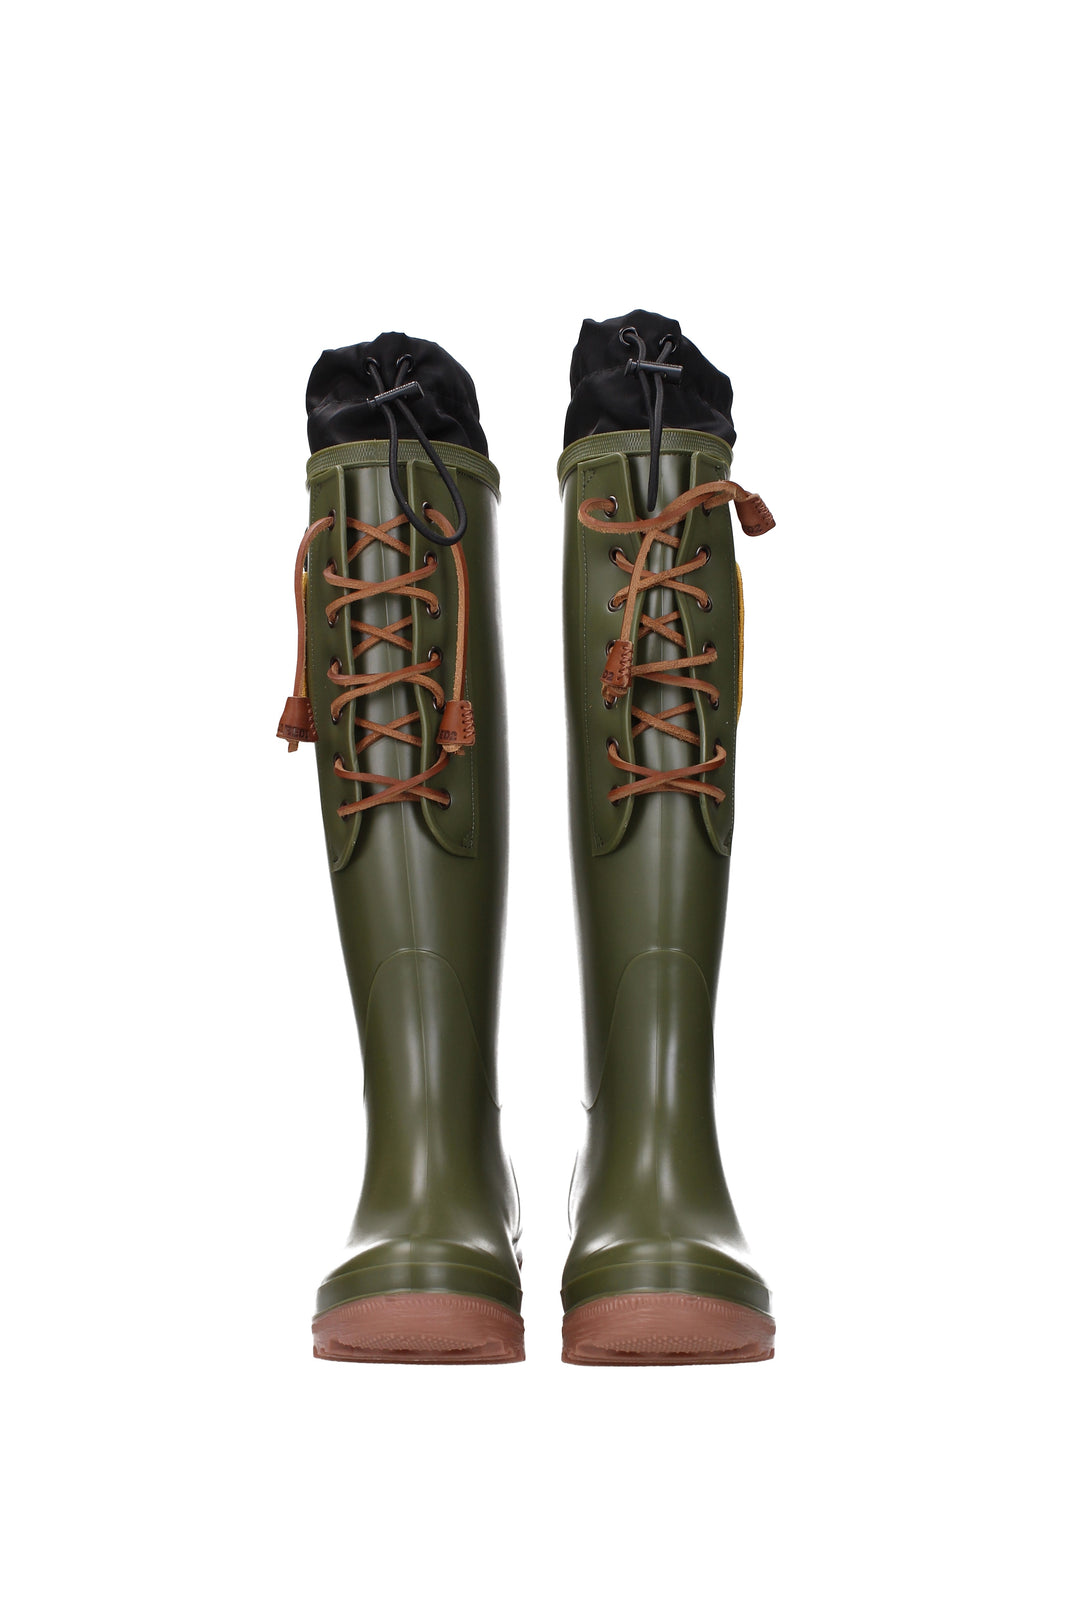 Stivali Gomma Verde Verde Militare - Dsquared2 - Donna